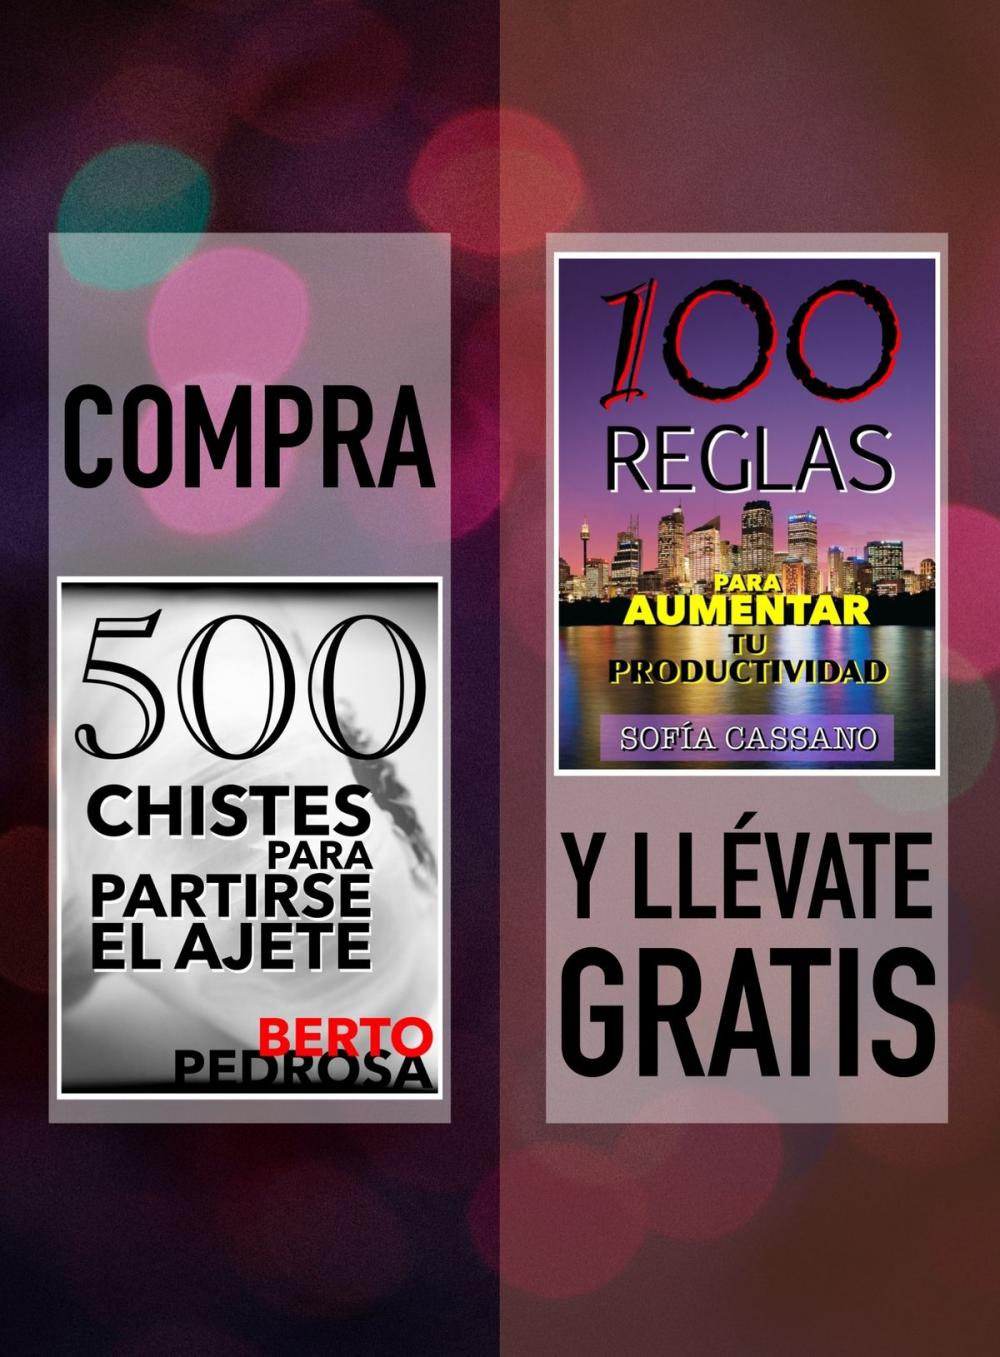 Big bigCover of Compra "500 Chistes para partirse el ajete" y llévate gratis "100 Reglas para aumentar tu productividad"